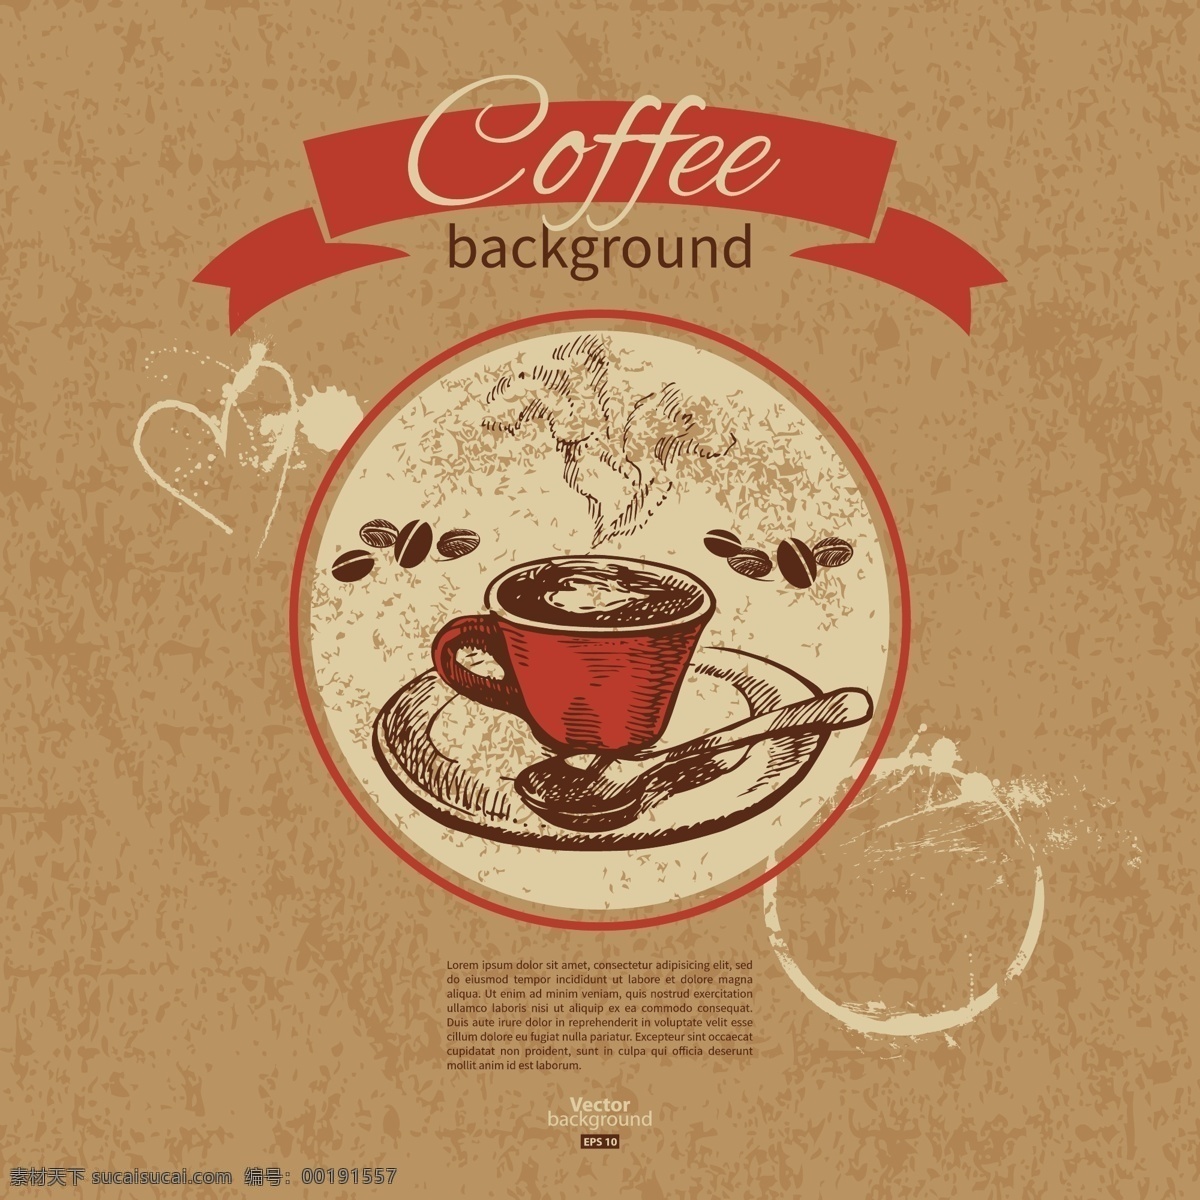 复古咖啡背景 咖啡 咖啡杯 咖啡商标 咖啡菜单 标签 咖啡屋 标志设计 复古 行业标志 标志图标 矢量素材 棕色